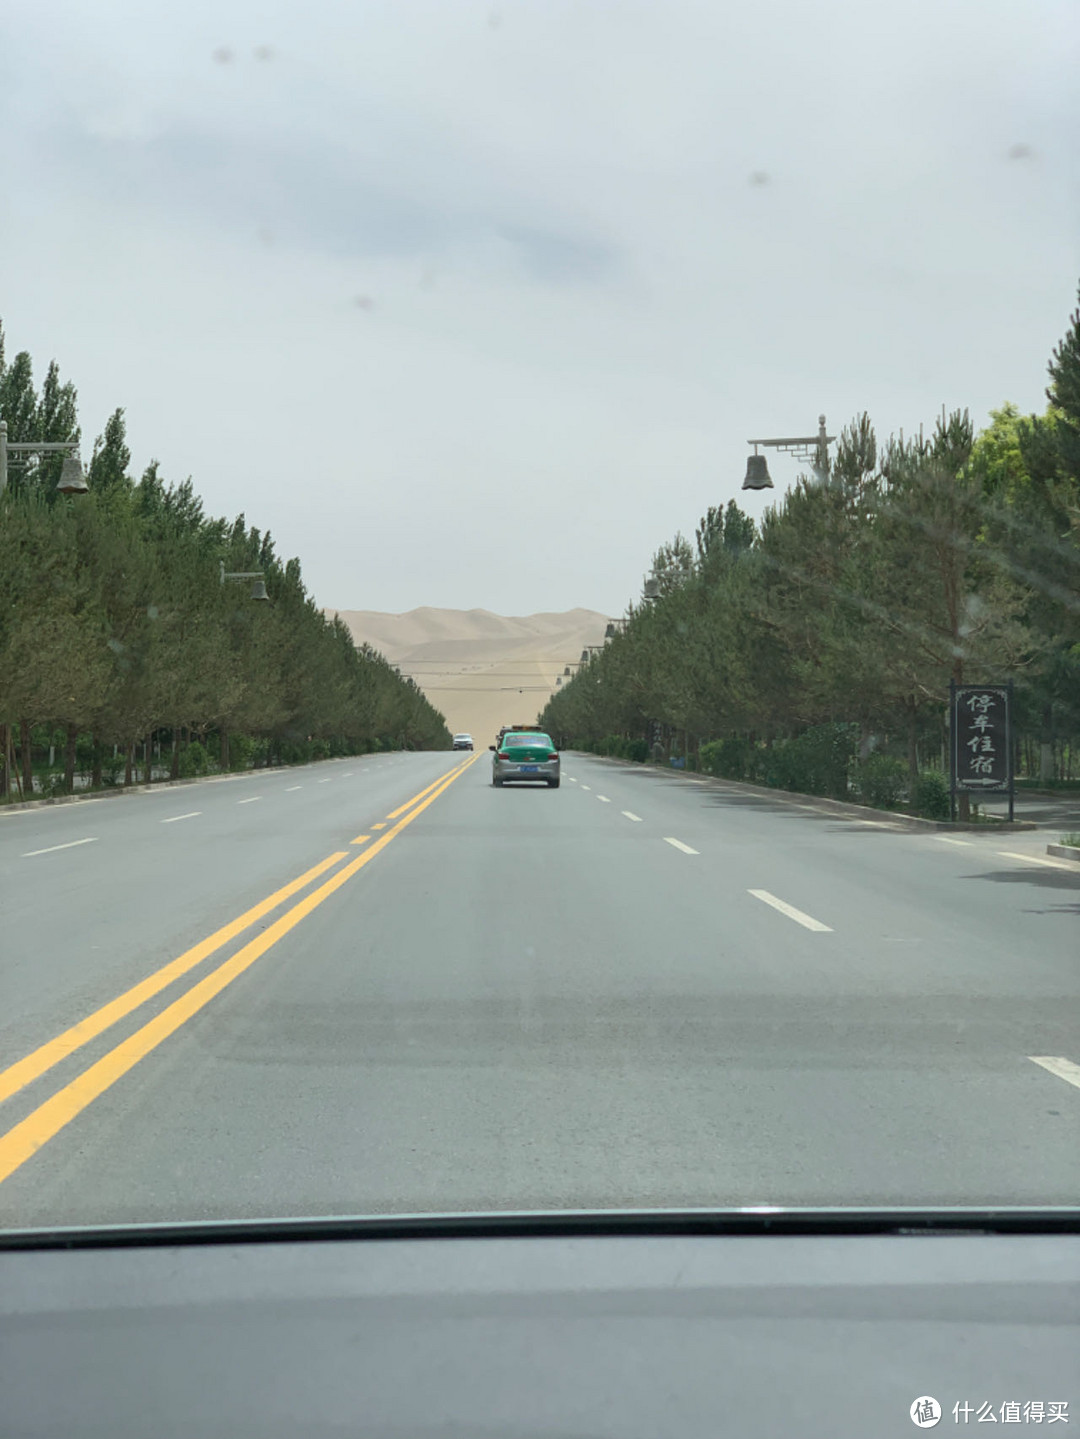 公路的尽头是沙漠